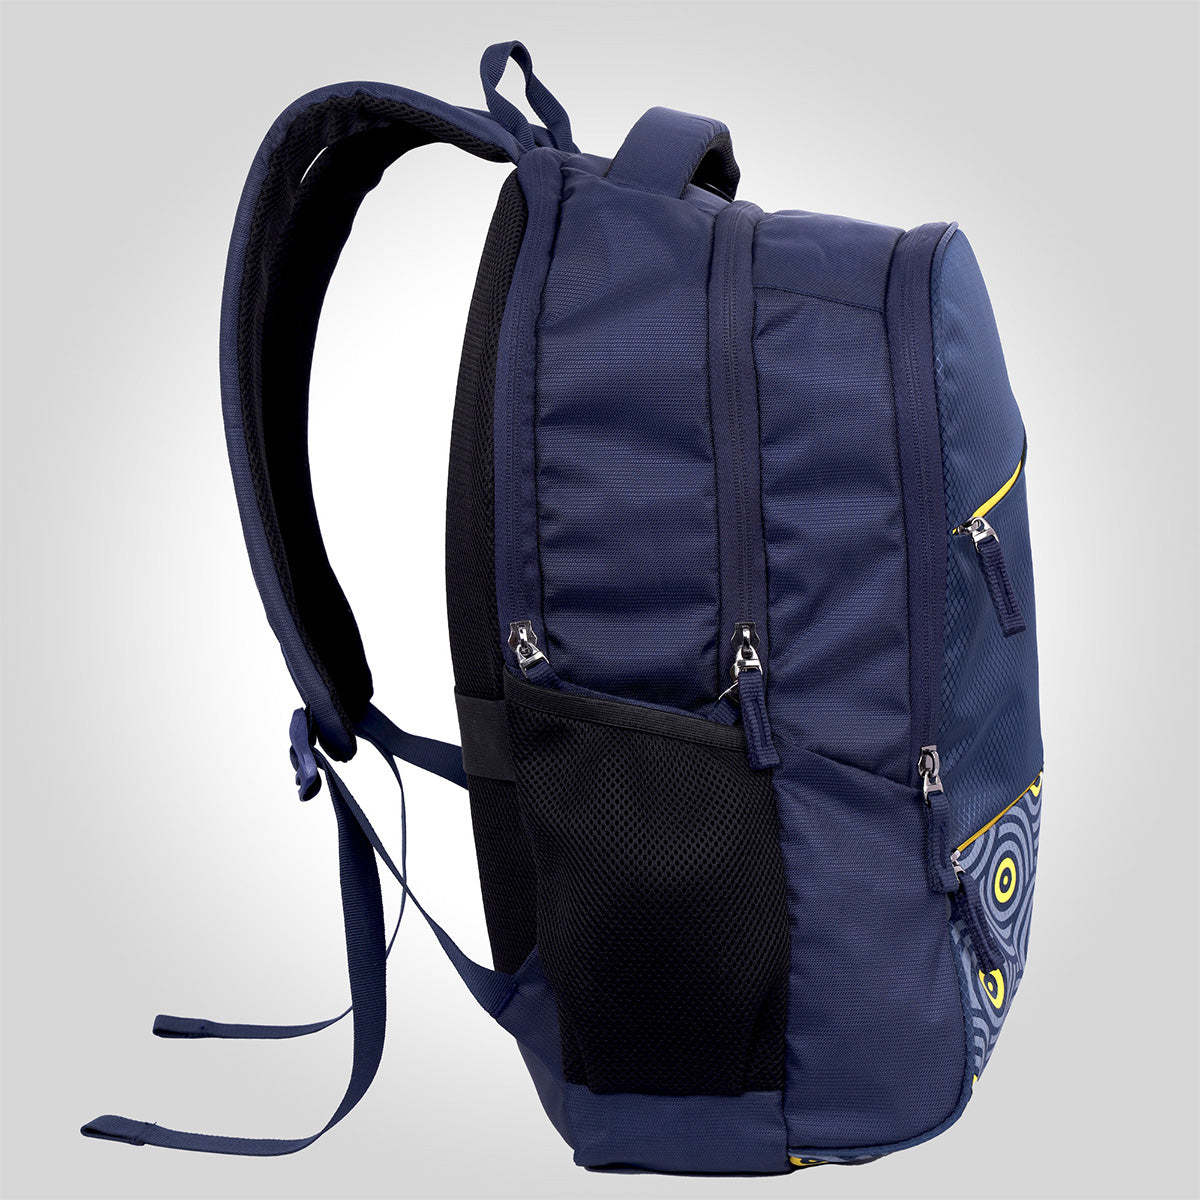 Zeb-Techshield X1-Backpack-Zebronics